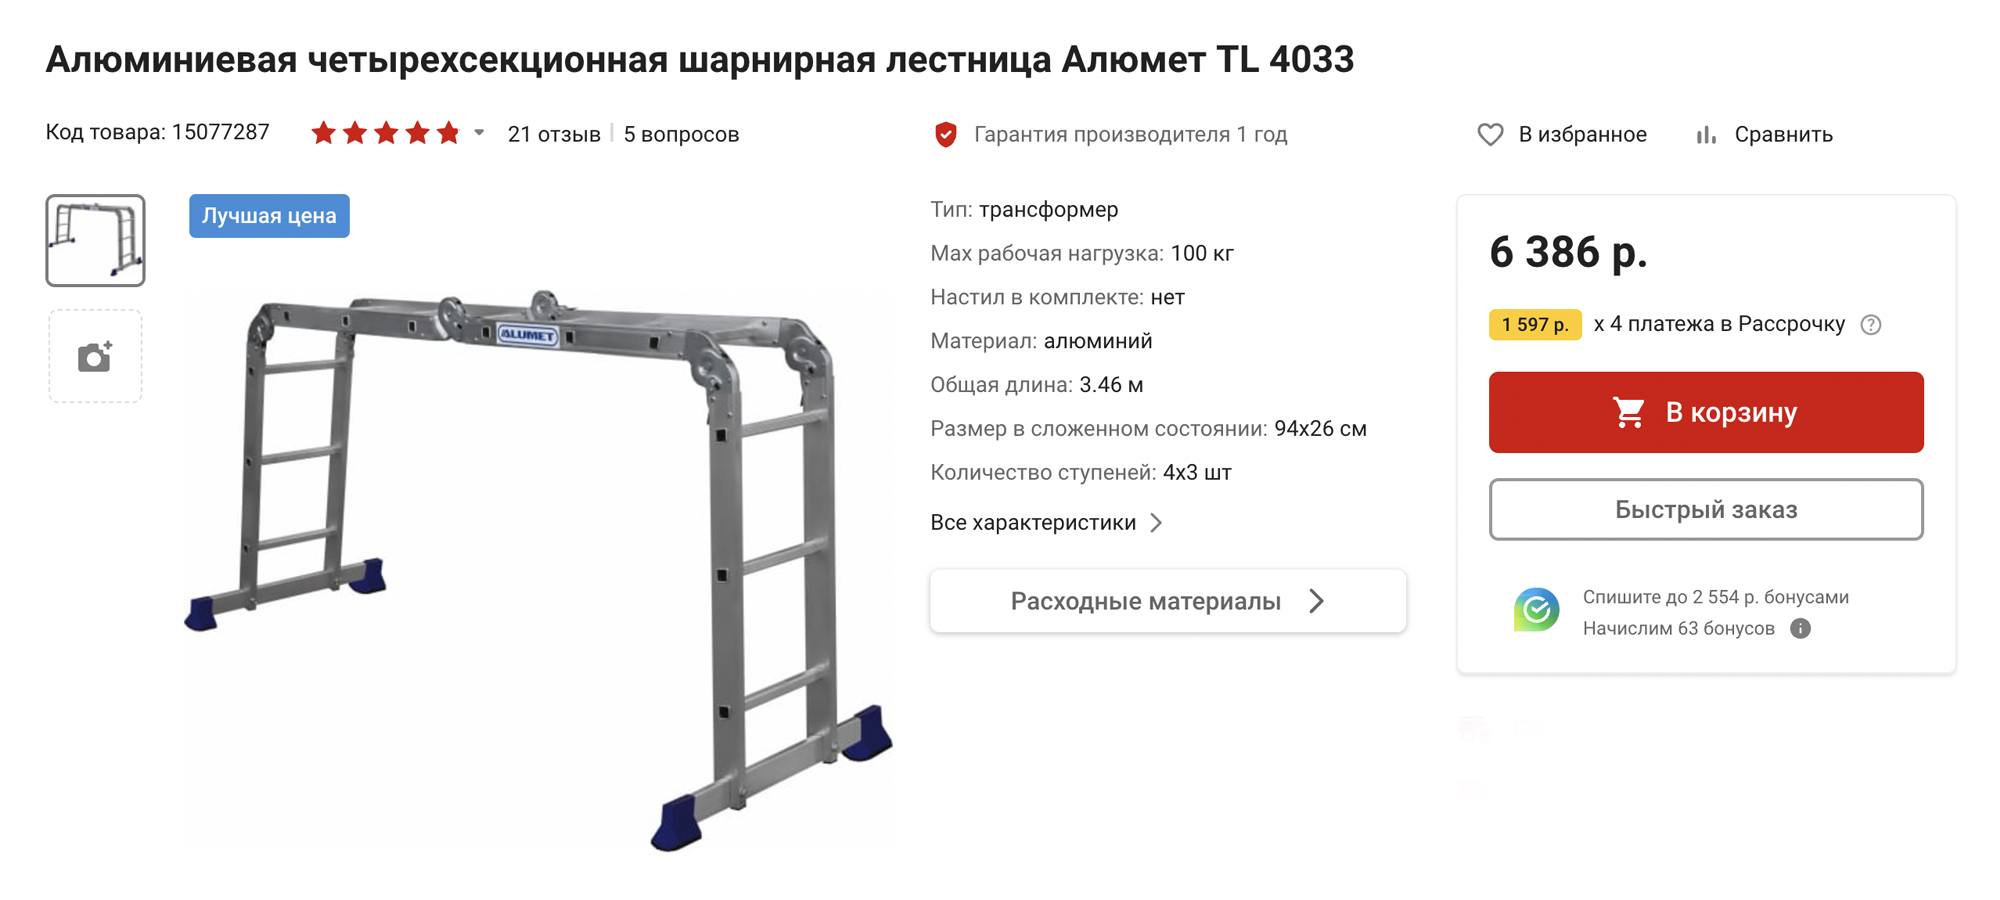 Я использую лестницу-трансформер, которая имеет общую длину 3,46 м и выдерживает максимальную нагрузку 100 кг. Источник: vseinstrumenti.ru